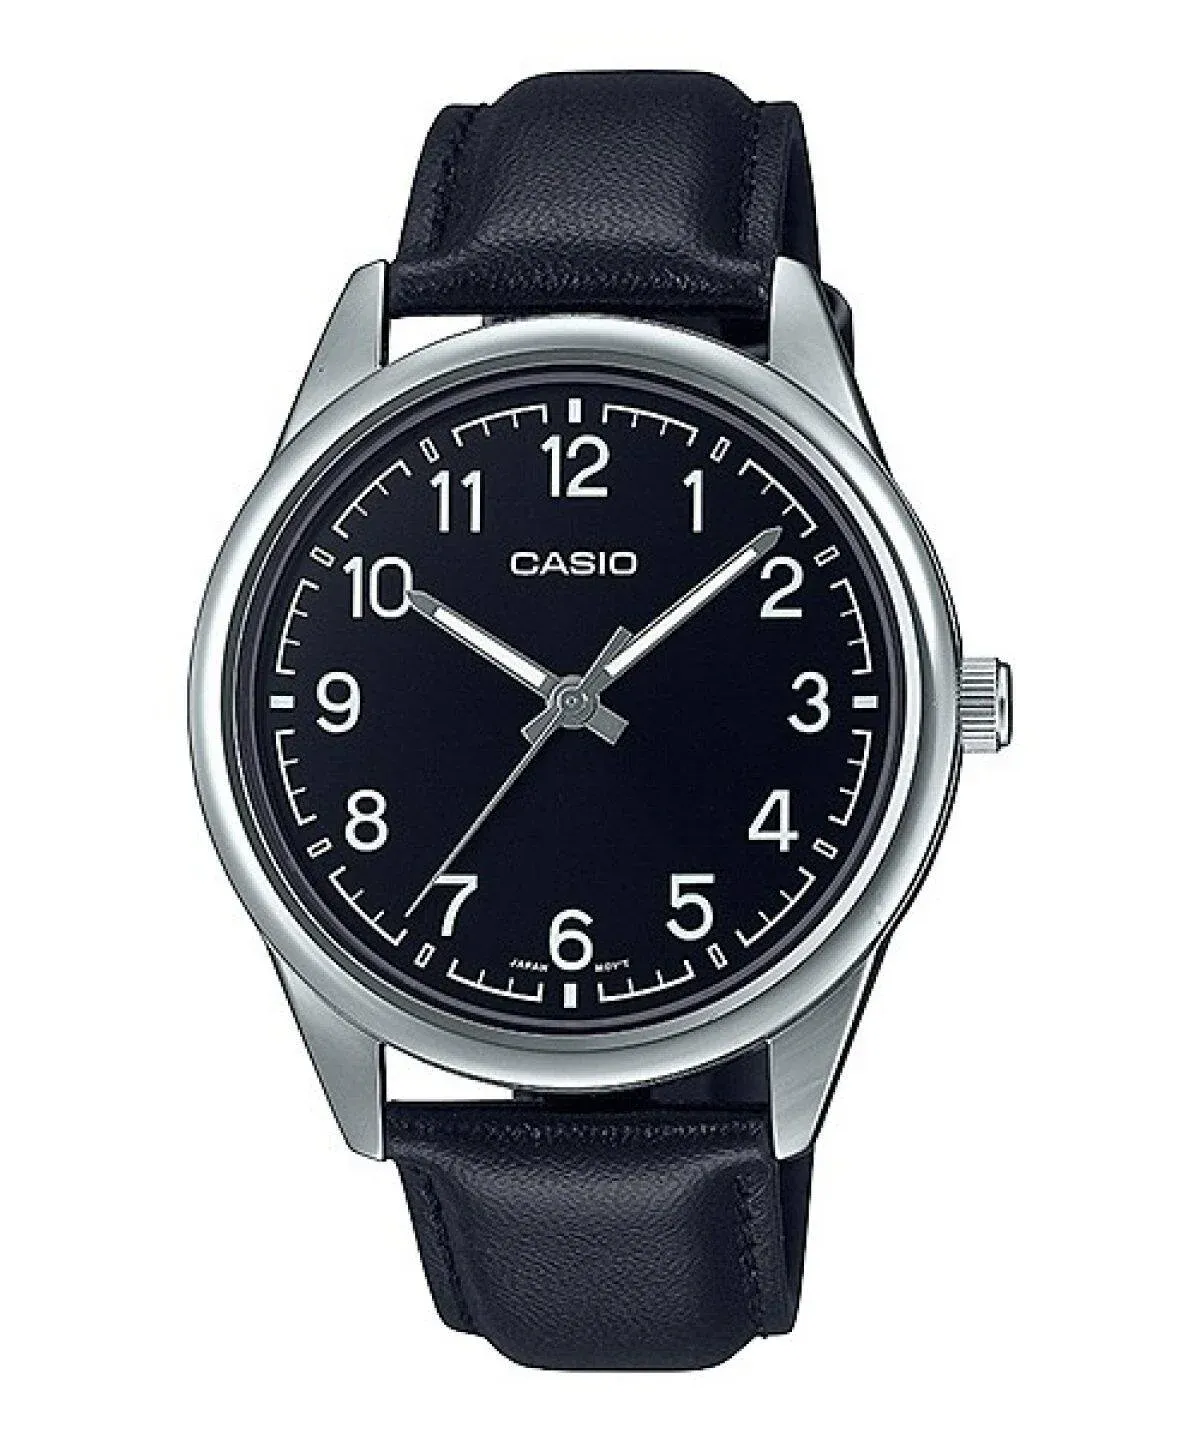 Reloj Casio Caballero Mtp-v005l-1b4udf   Cuero Negro Caja Plateada Fondo Negro Hombre 